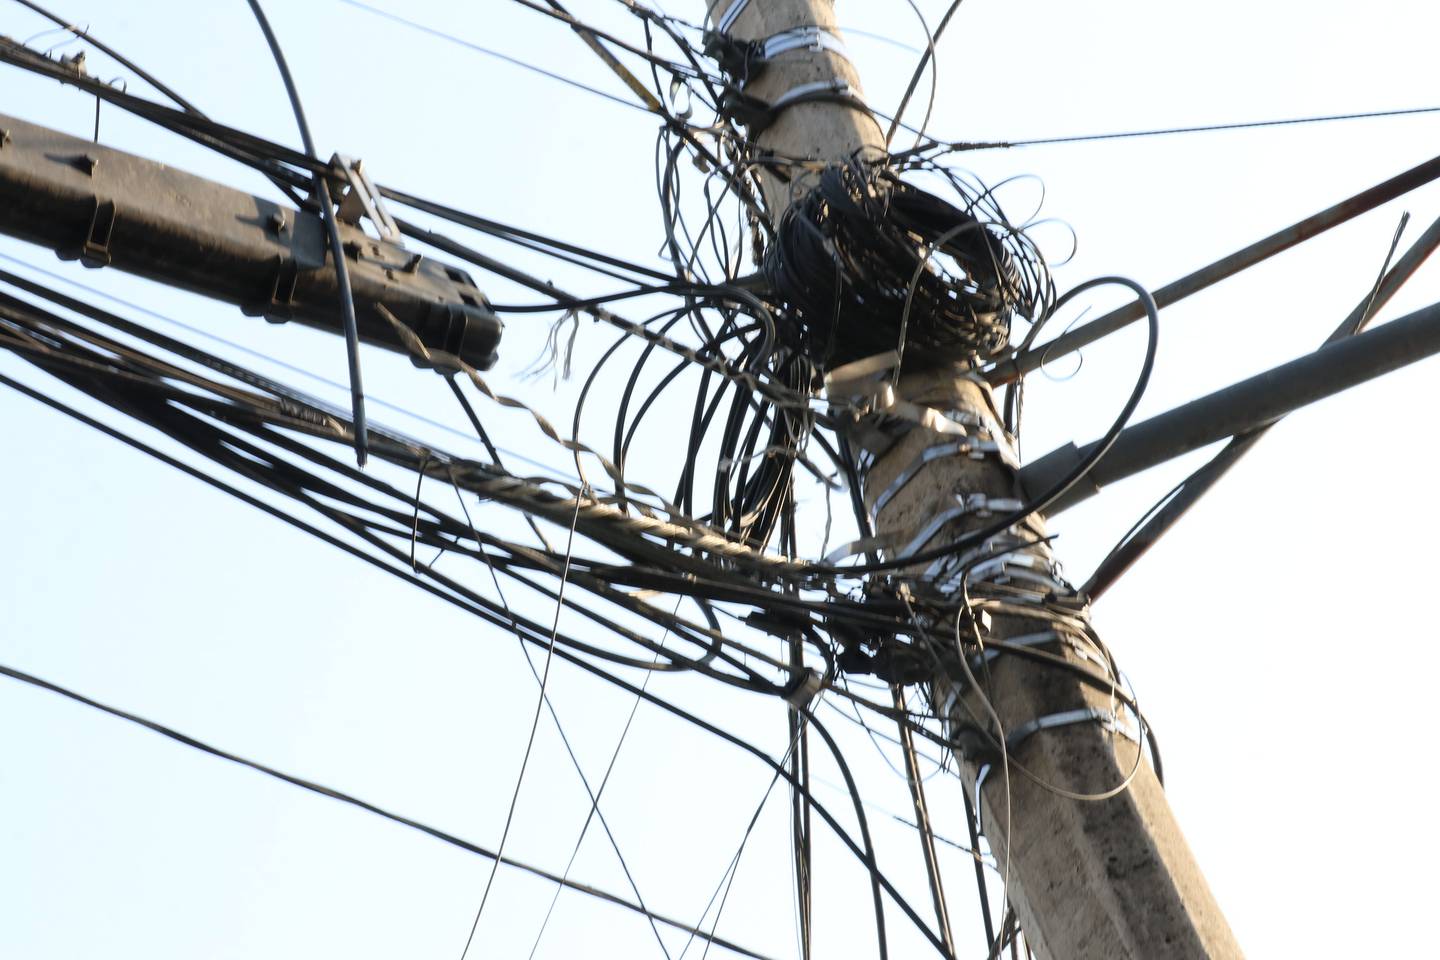 Los cables abandonados se han convertido en un severos problema en Guadalajara incluso se han producido accidentes mortales.